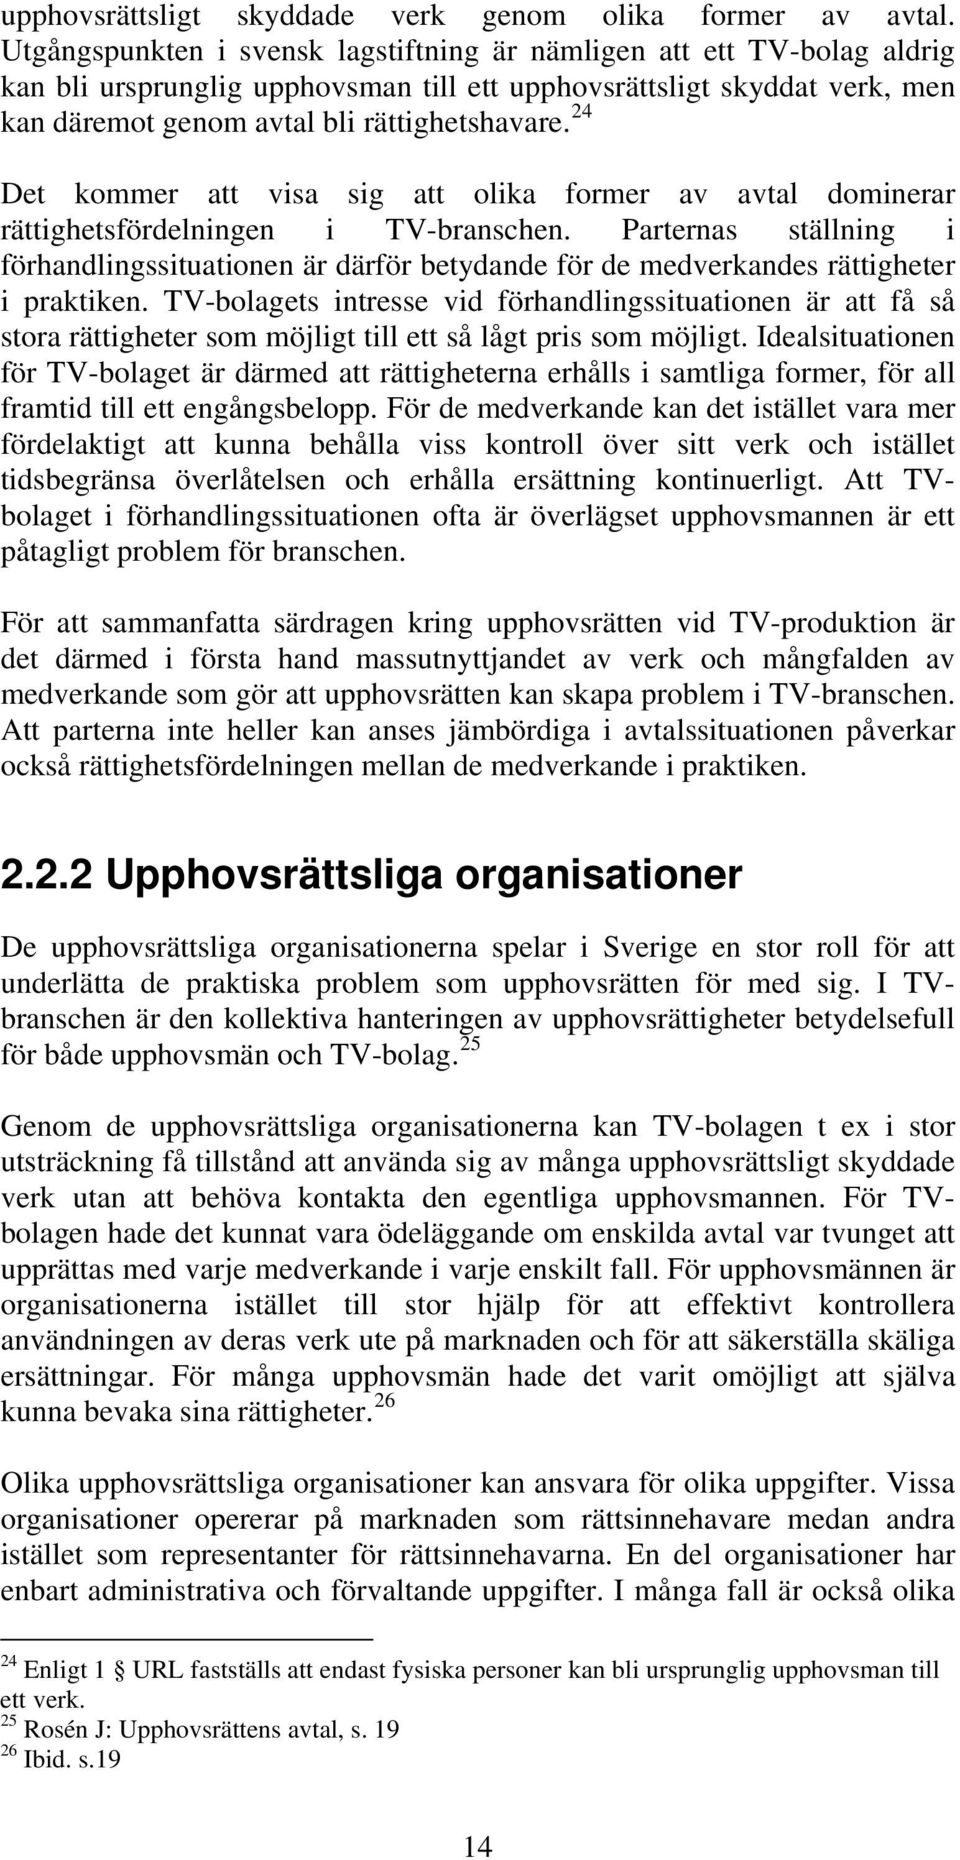 24 Det kommer att visa sig att olika former av avtal dominerar rättighetsfördelningen i TV-branschen.